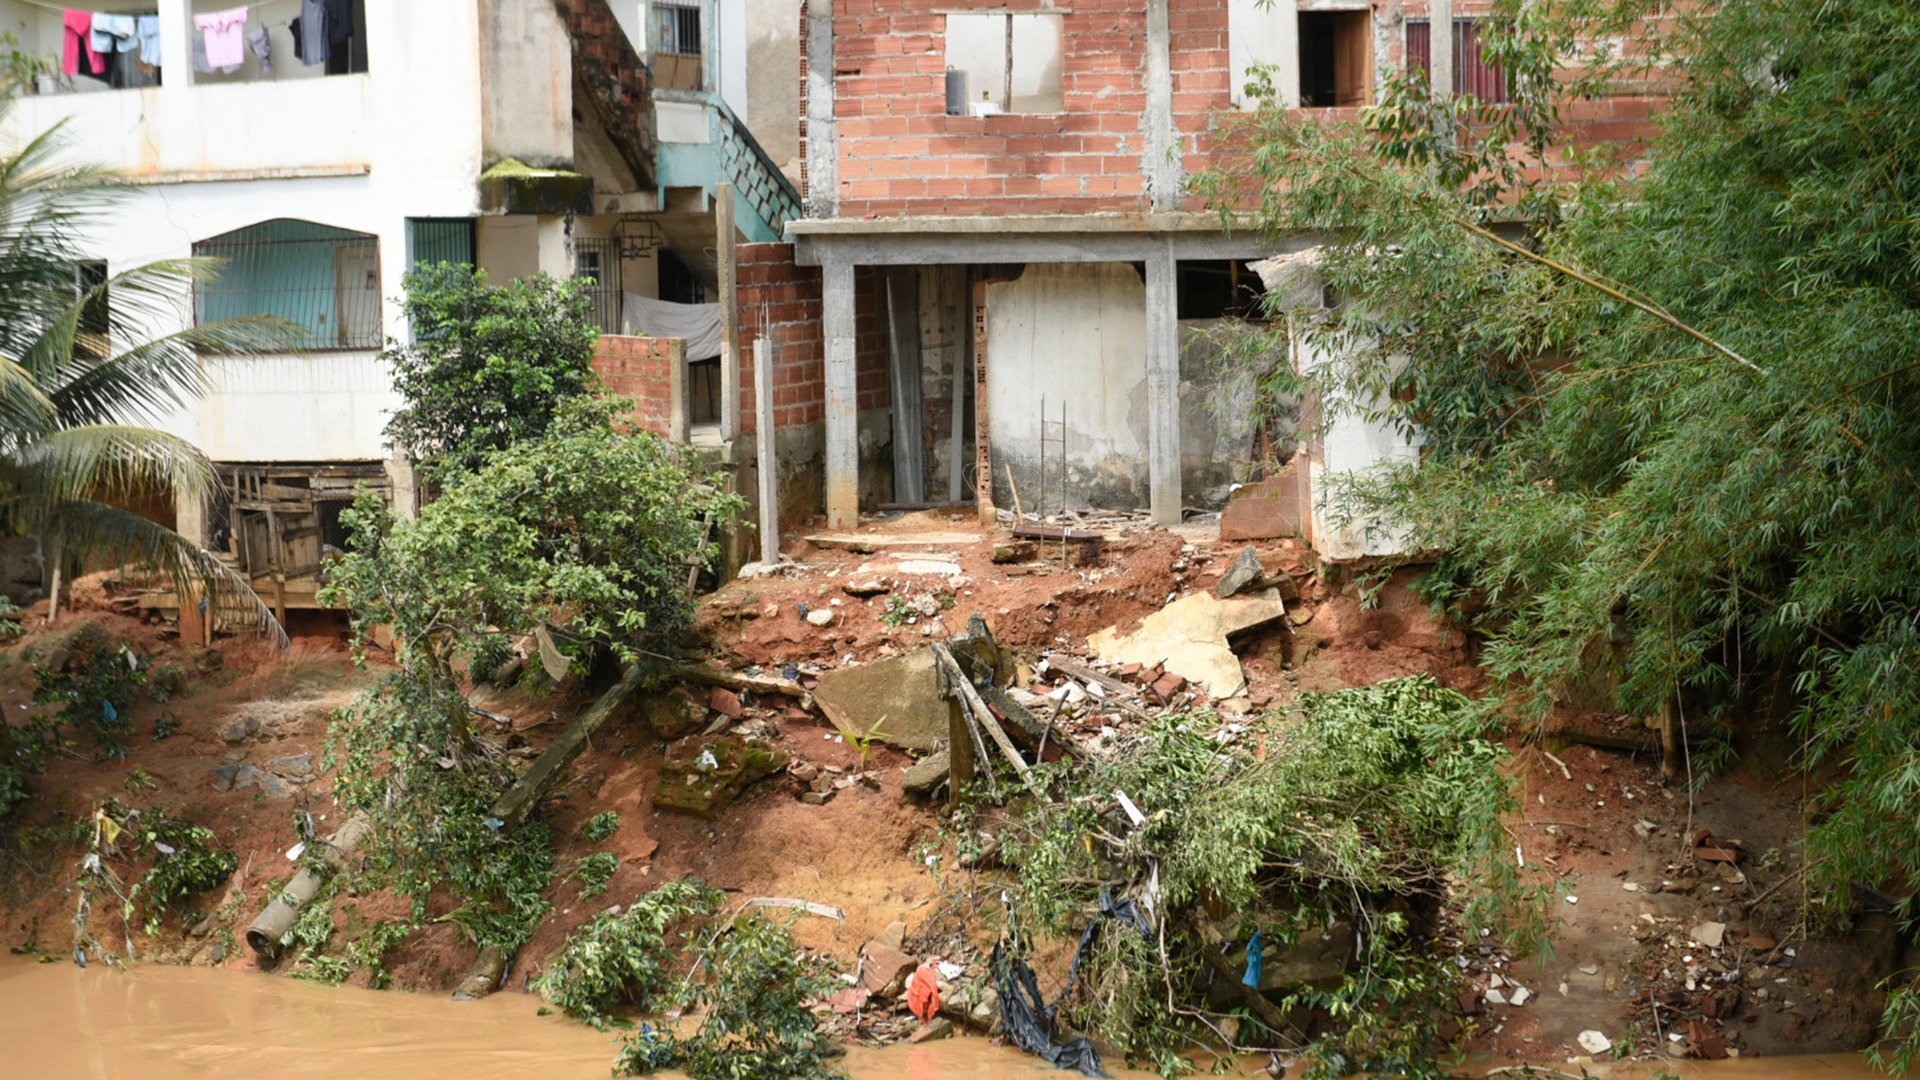 A enchente atingiu as casas que ficam nas margens do rio - Bairro Niterói